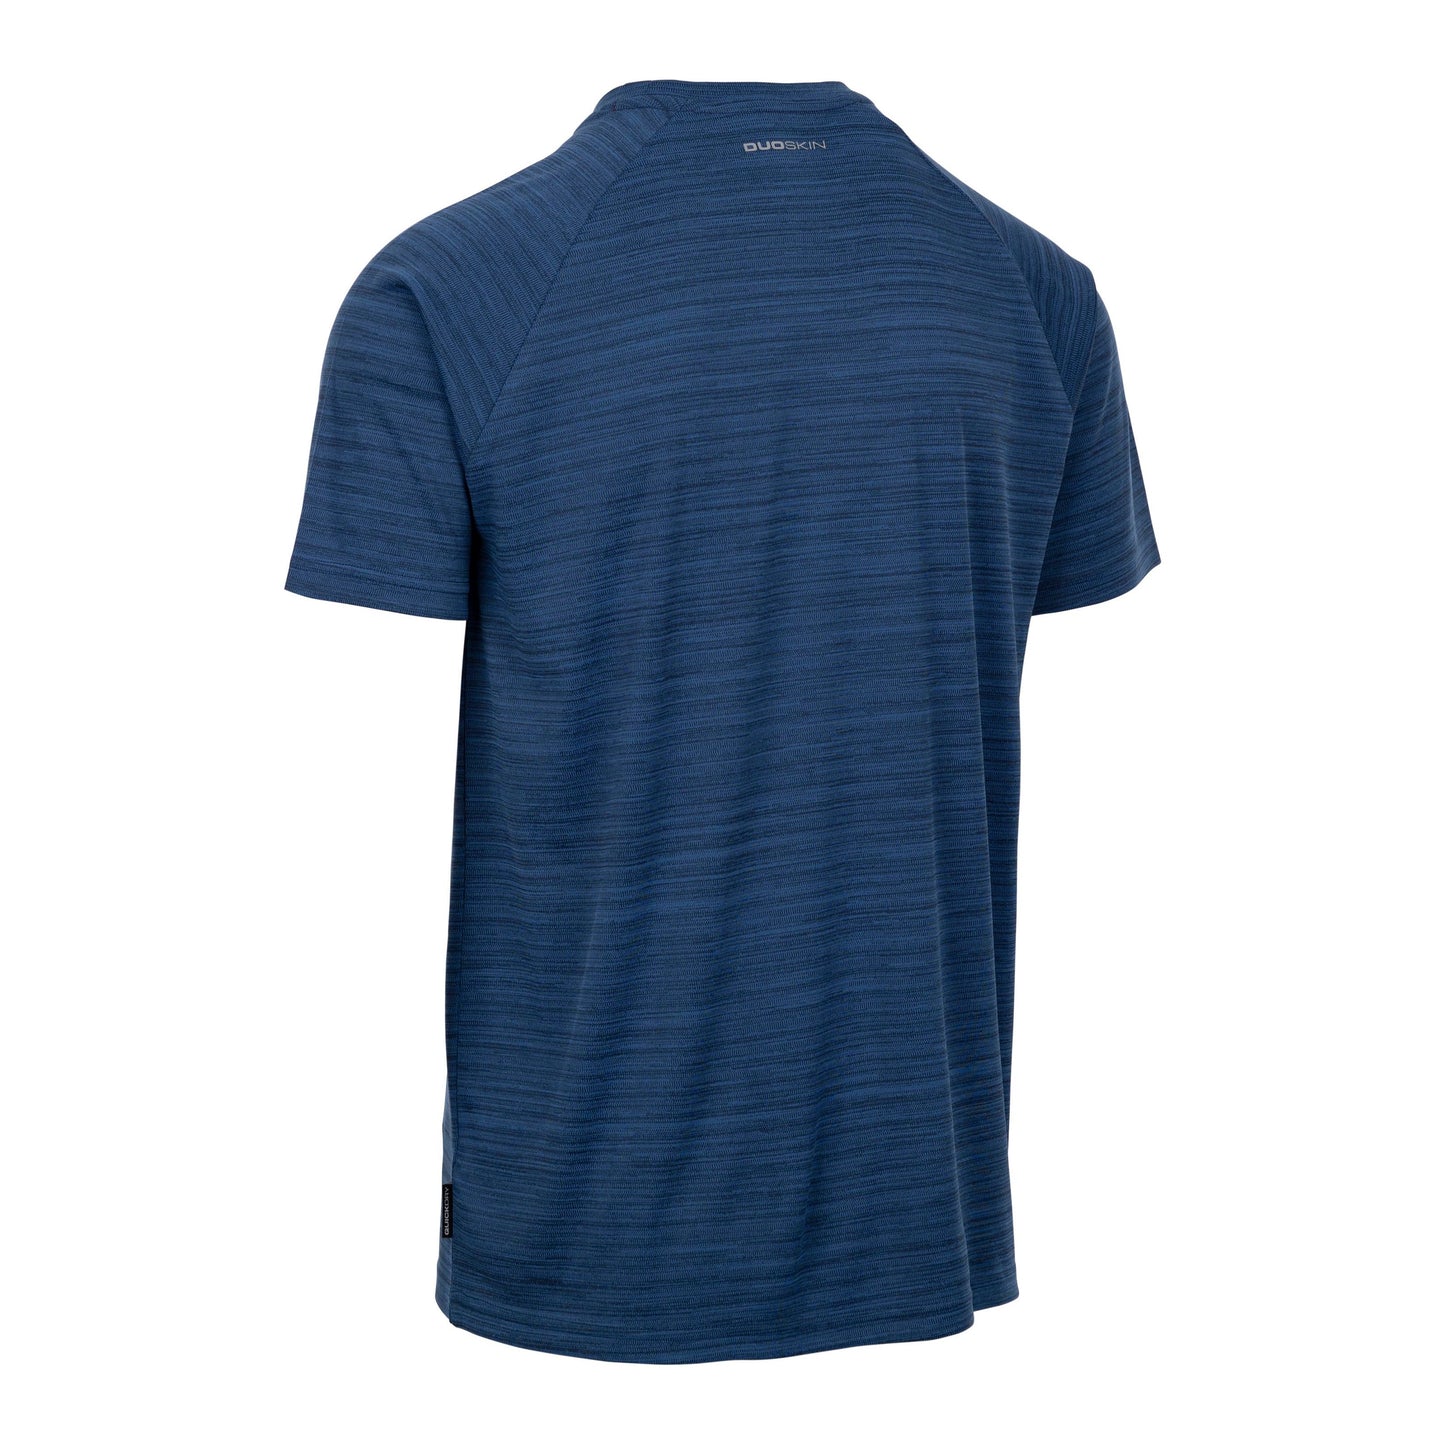 Leecana Men's Quick Dry Active T-Shirt in Navy Marl